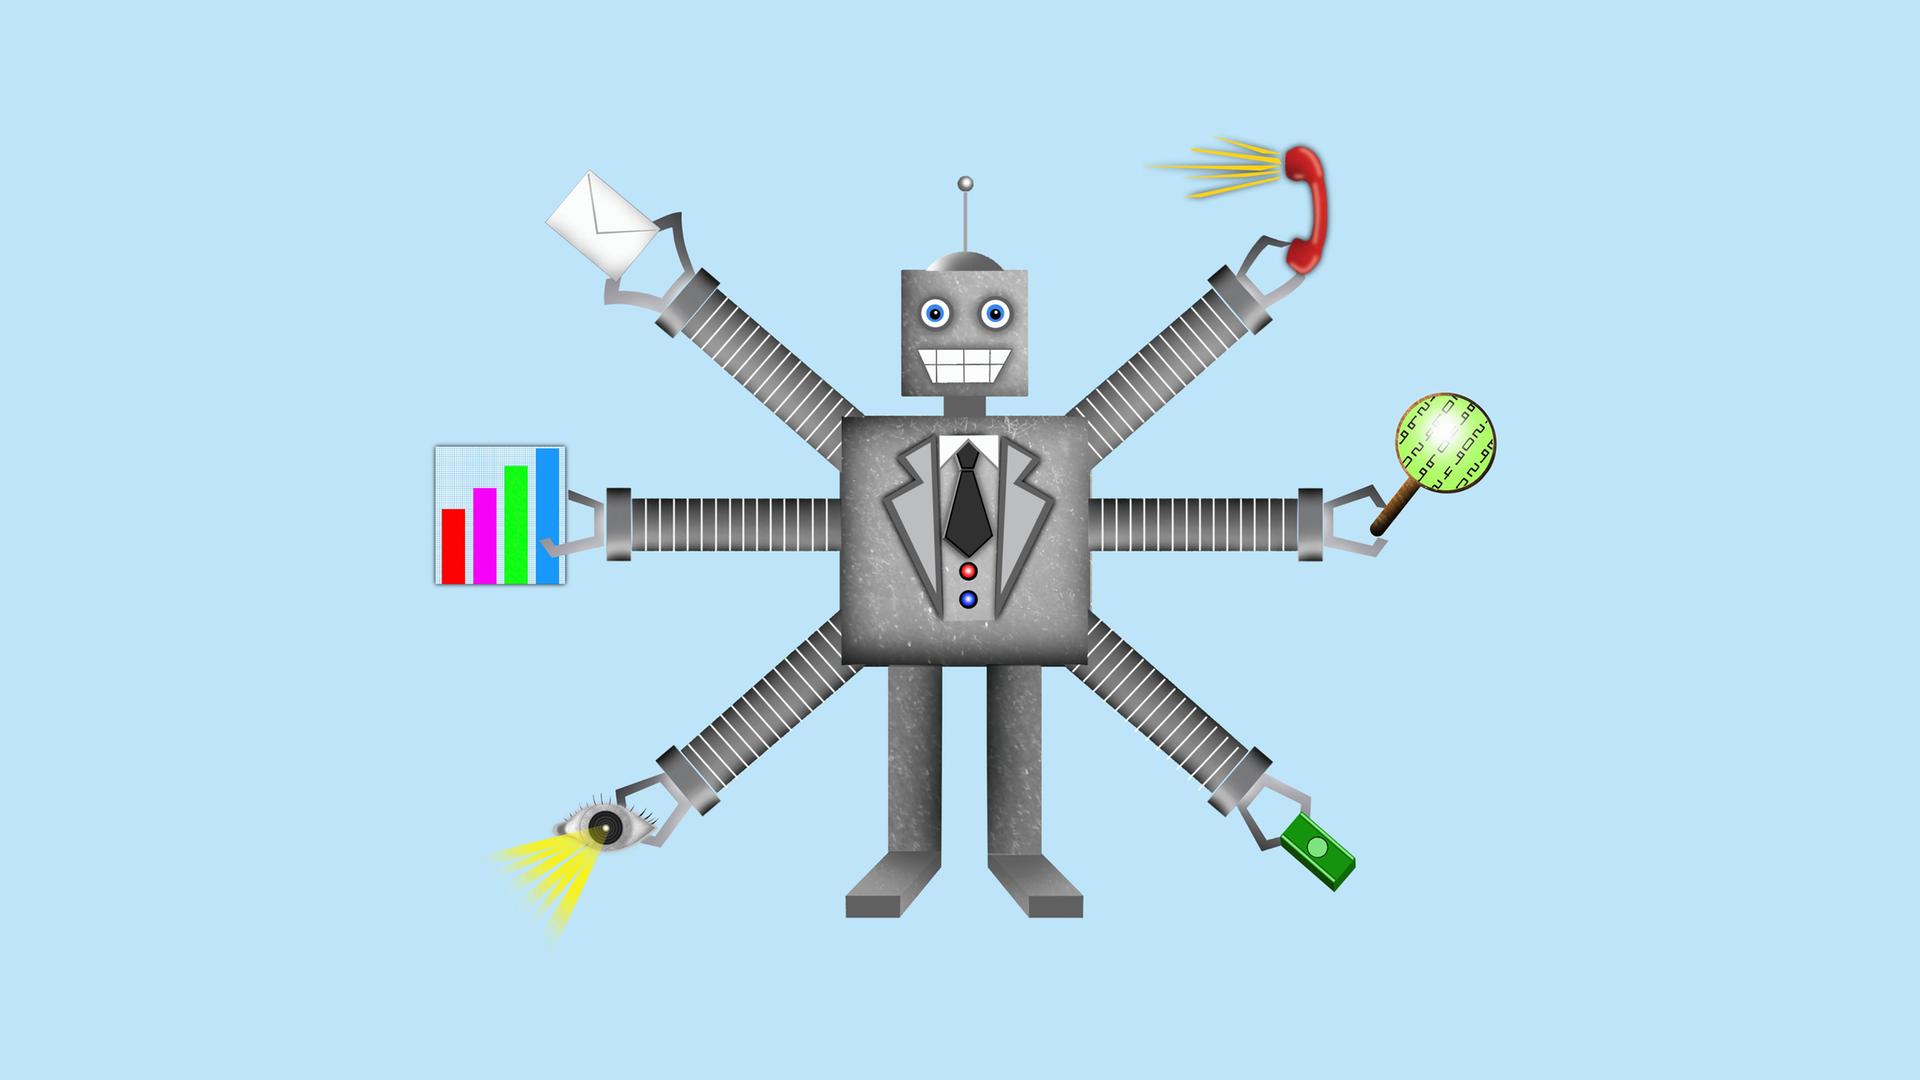 Grafik eines Roboters mit mehreren Armen, die verschiedene Arbeitsutensilien halten.